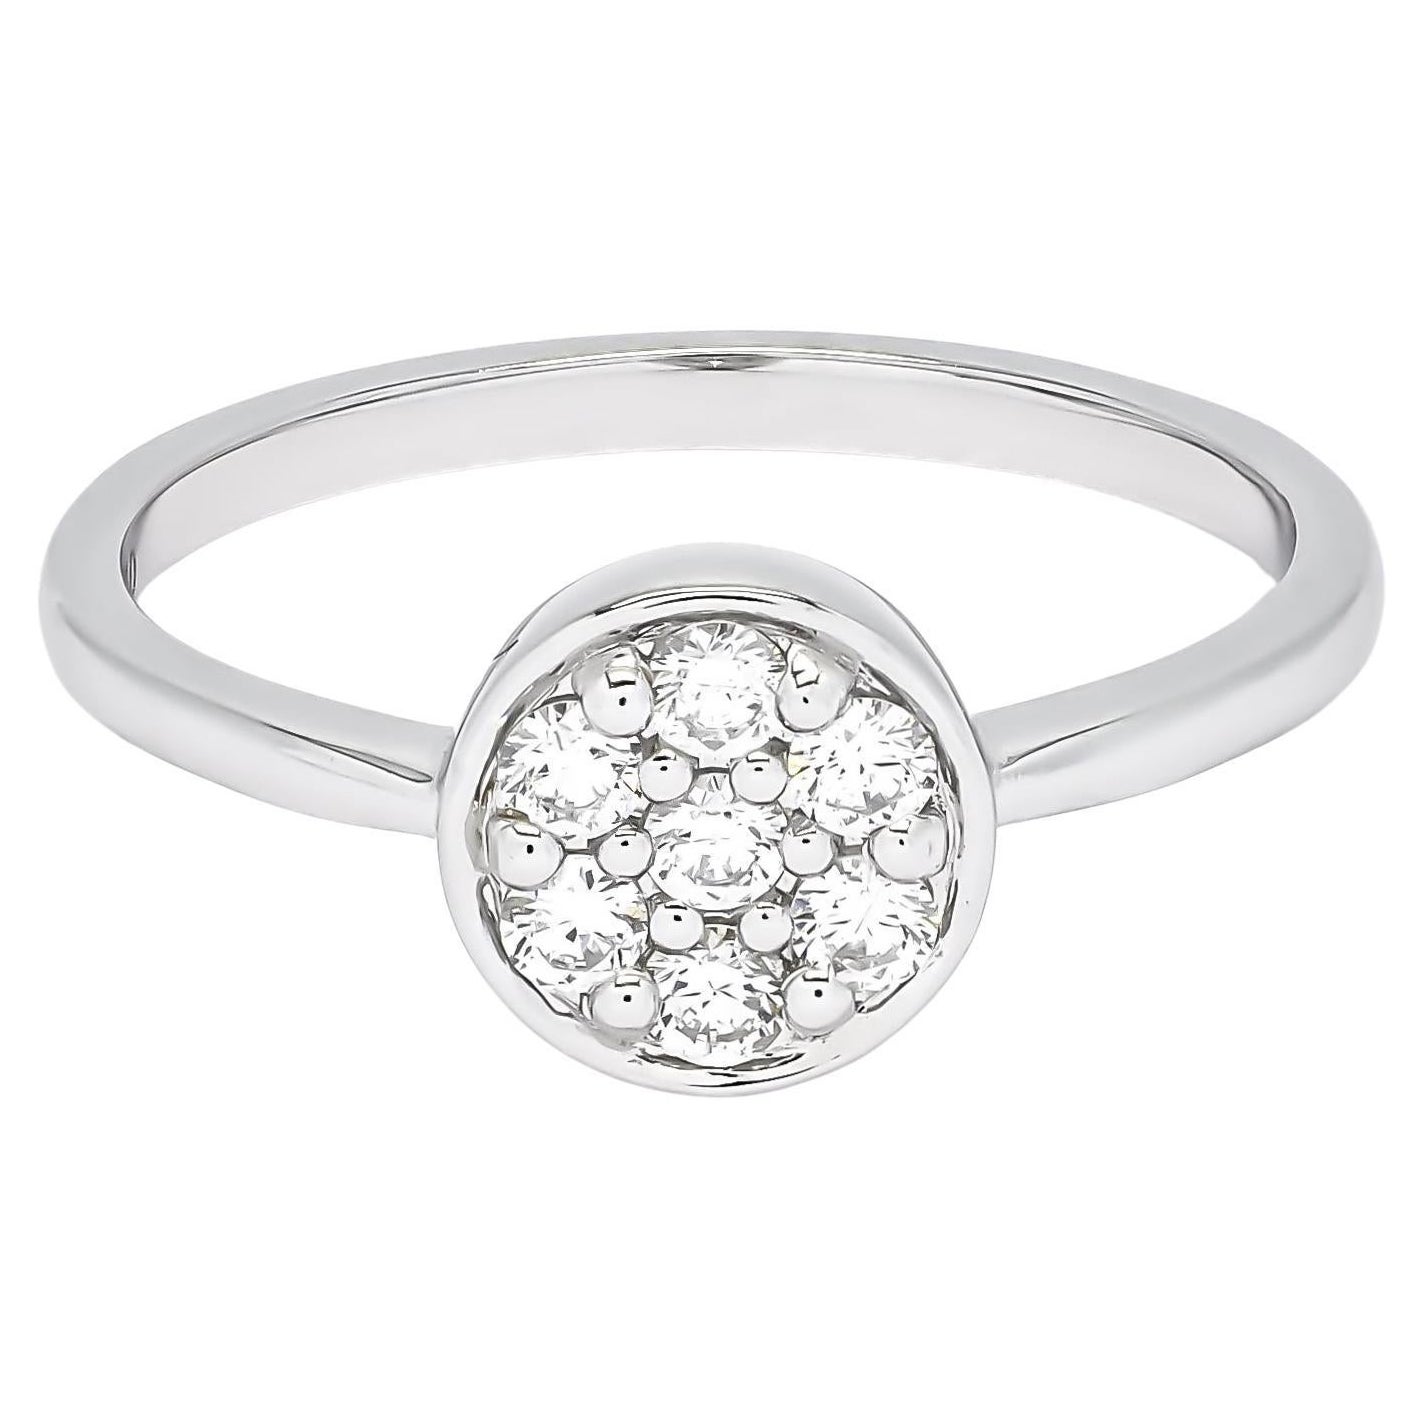 Natural Diamond 0.25CT 18Karat White Gold Diamond Engagement Ring